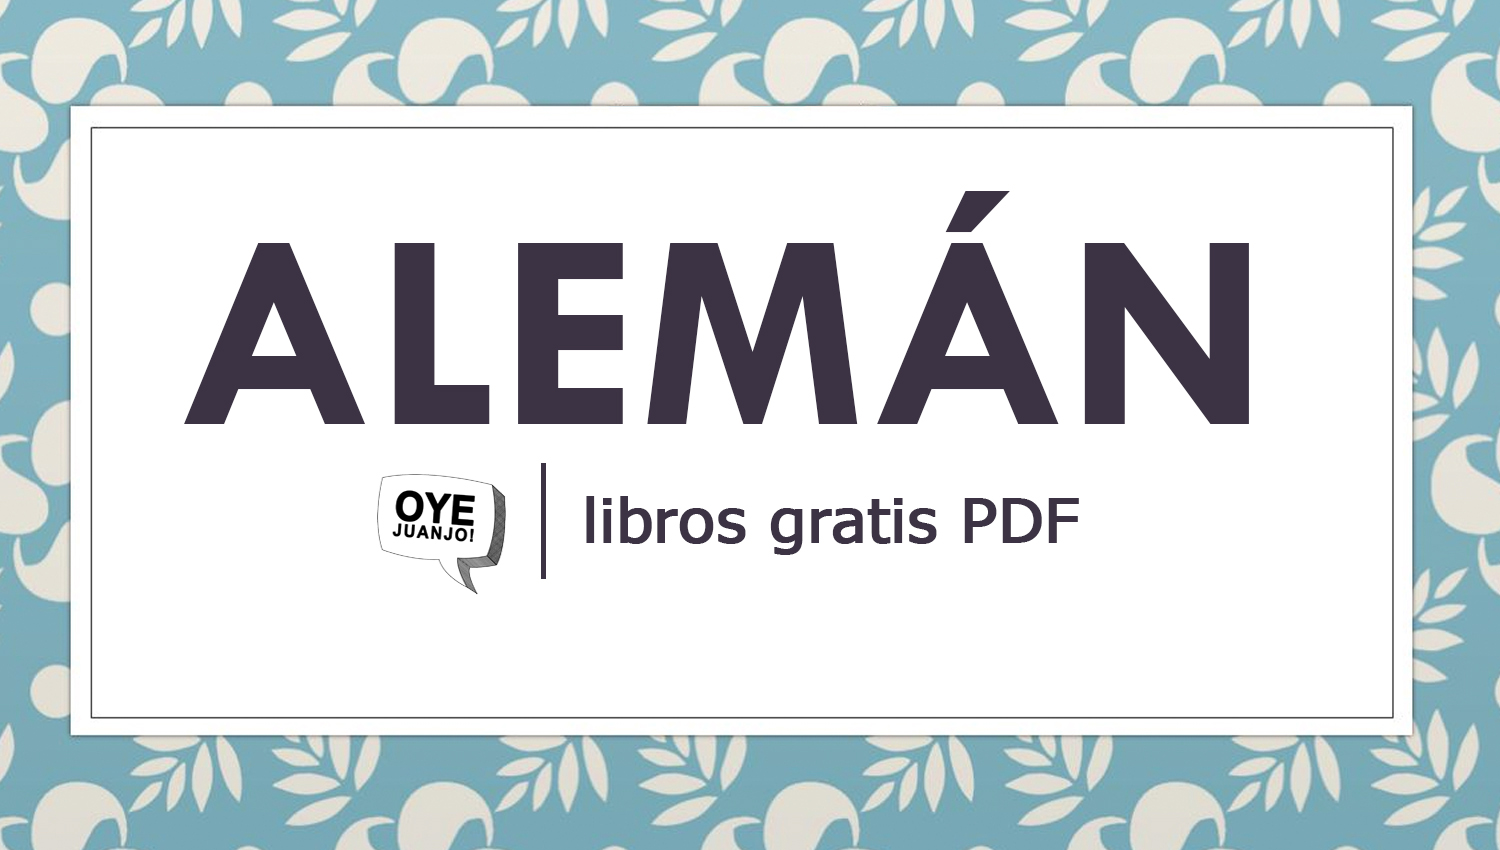 posponer Generalmente hablando Segundo grado 10 libros PDF para aprender alemán gratis